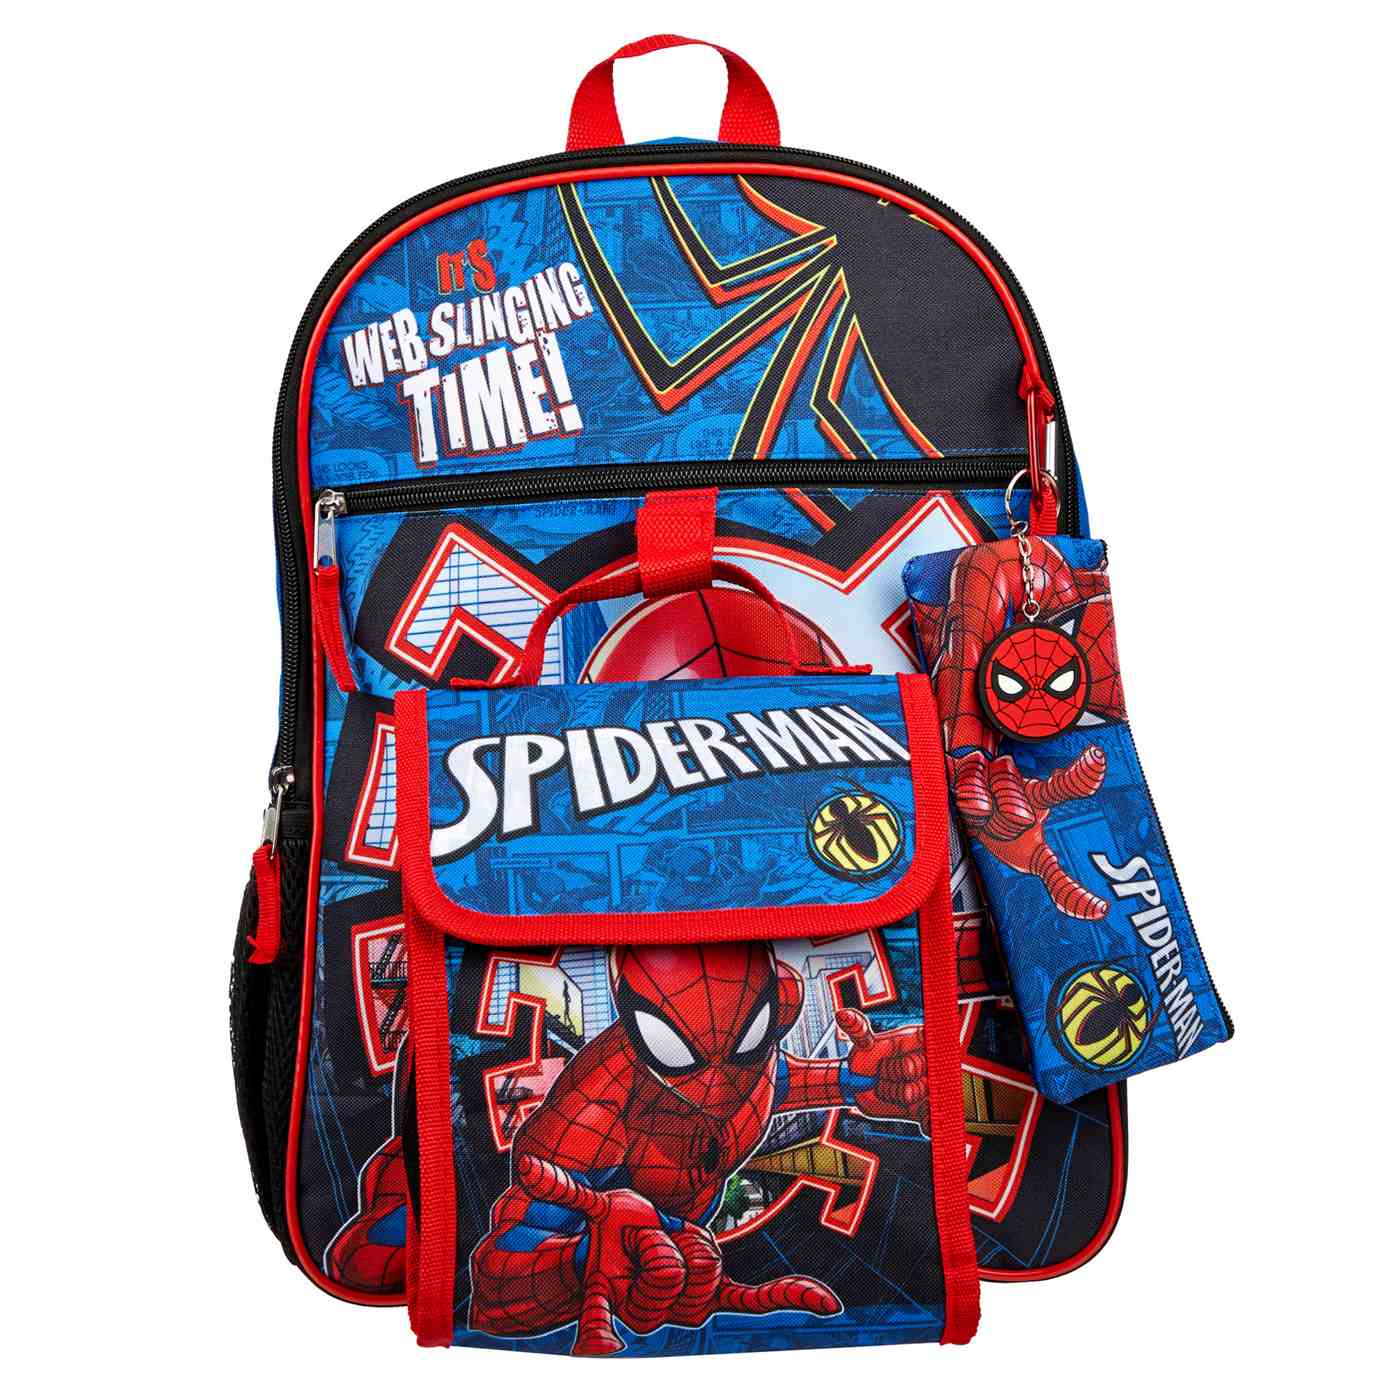 Marvel Spider-Man Backpack Set; image 1 of 5